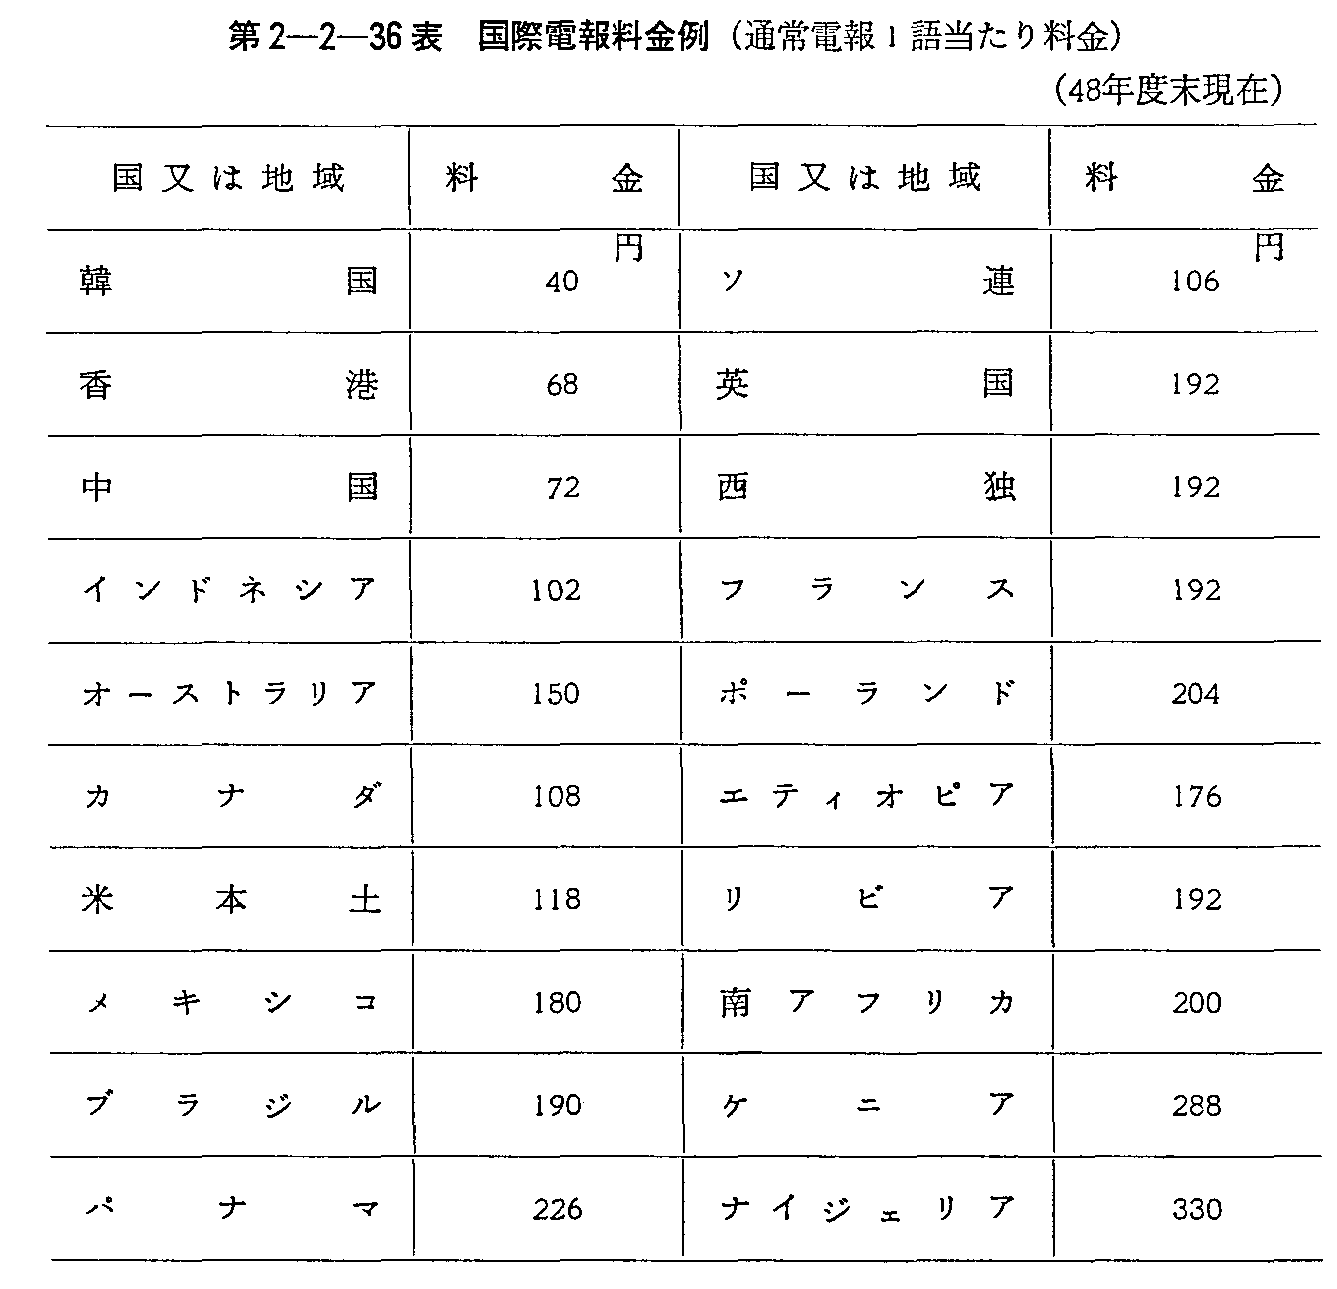 2-2-36\ ۓd񗿋(ʏd1ꓖ藿)(48Nx)